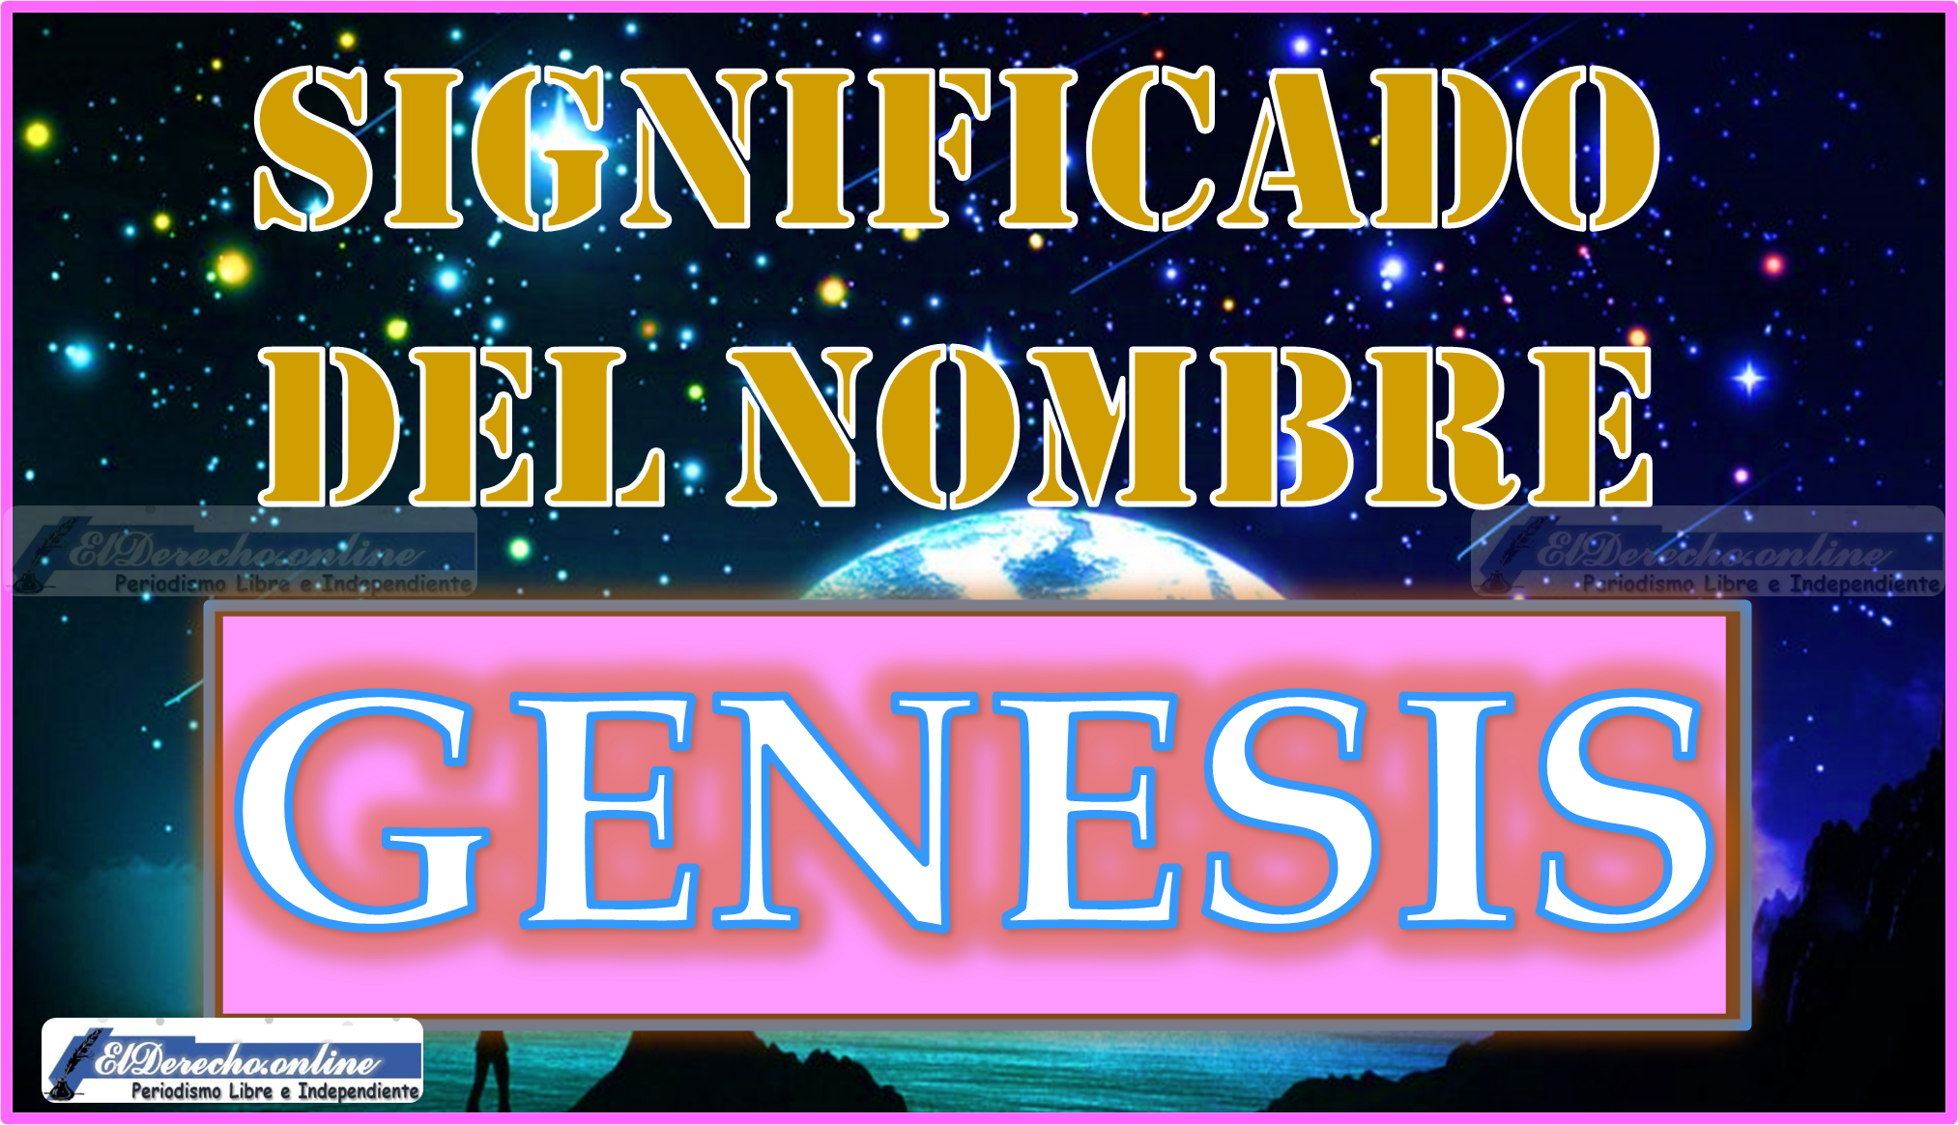 Significado del nombre Genesis, su origen y más